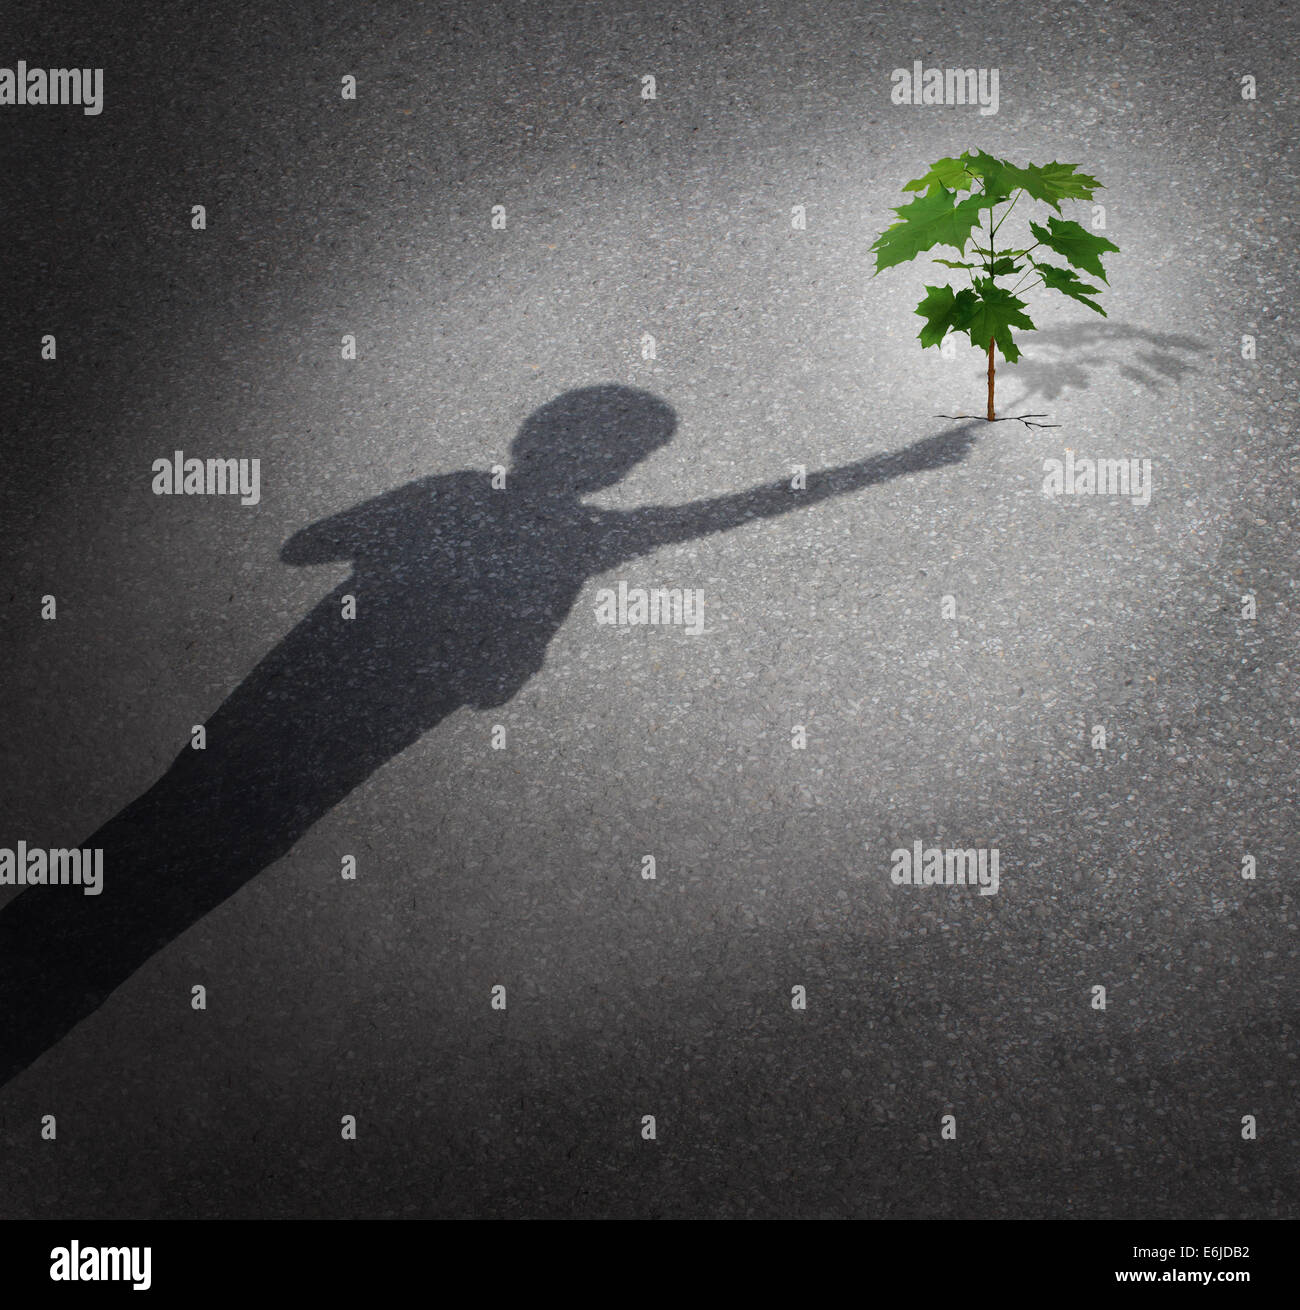 Lebens und der Hoffnung als ein Grow-Konzept mit einem Schatten eines Kindes berühren ein Baum Bäumchen wachsen durch Stadt Pflaster als Symbol für die zukünftige Umweltschutz und die Unterstützung der nächsten Generation. Stockfoto